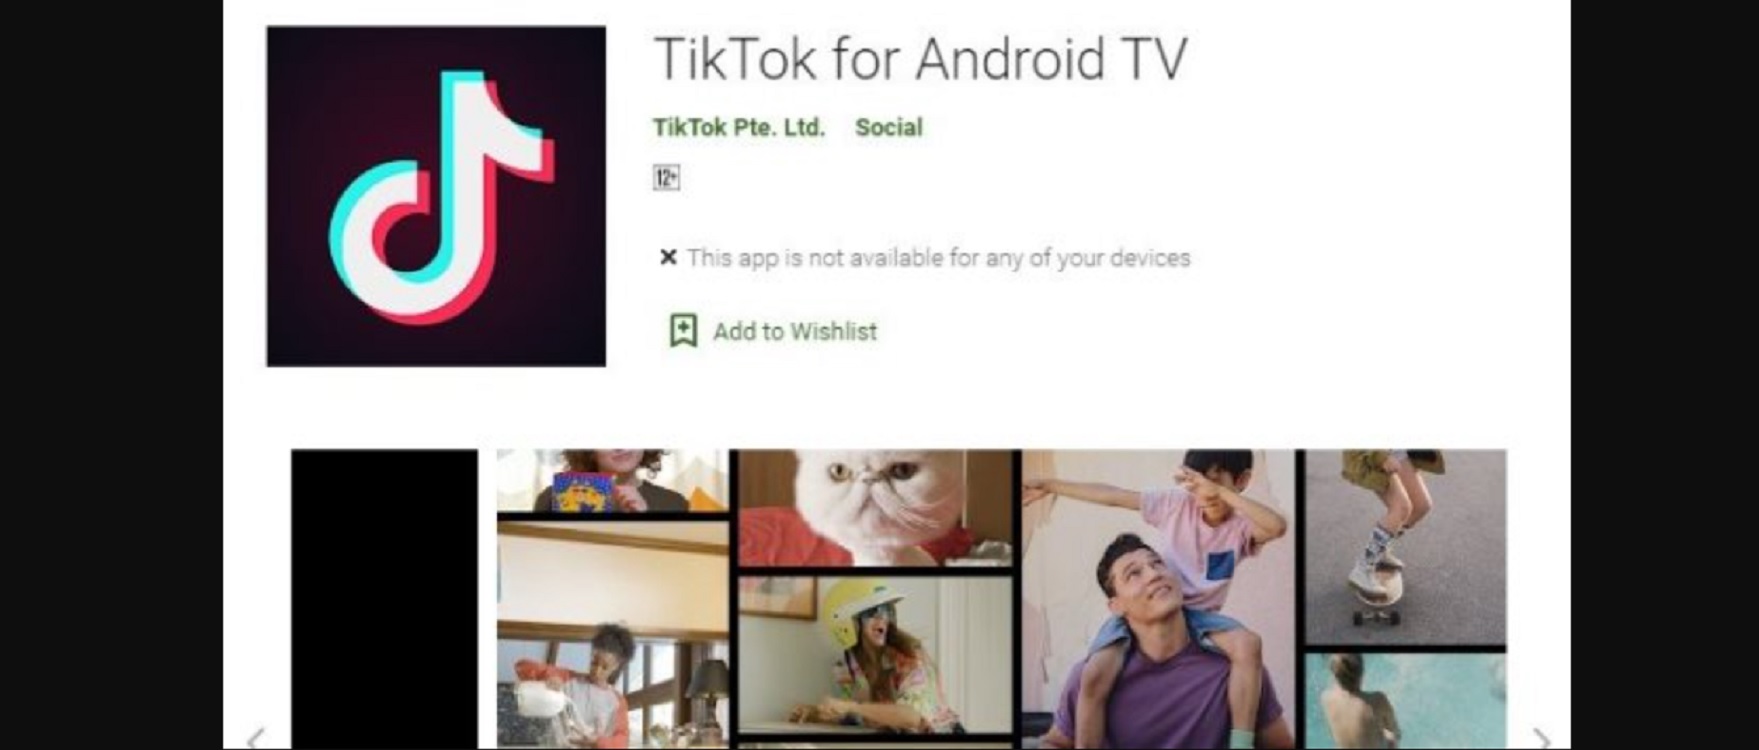 Baru! Nonton TikTok di TV, Ini Link Download dan Cara Login di Android TV